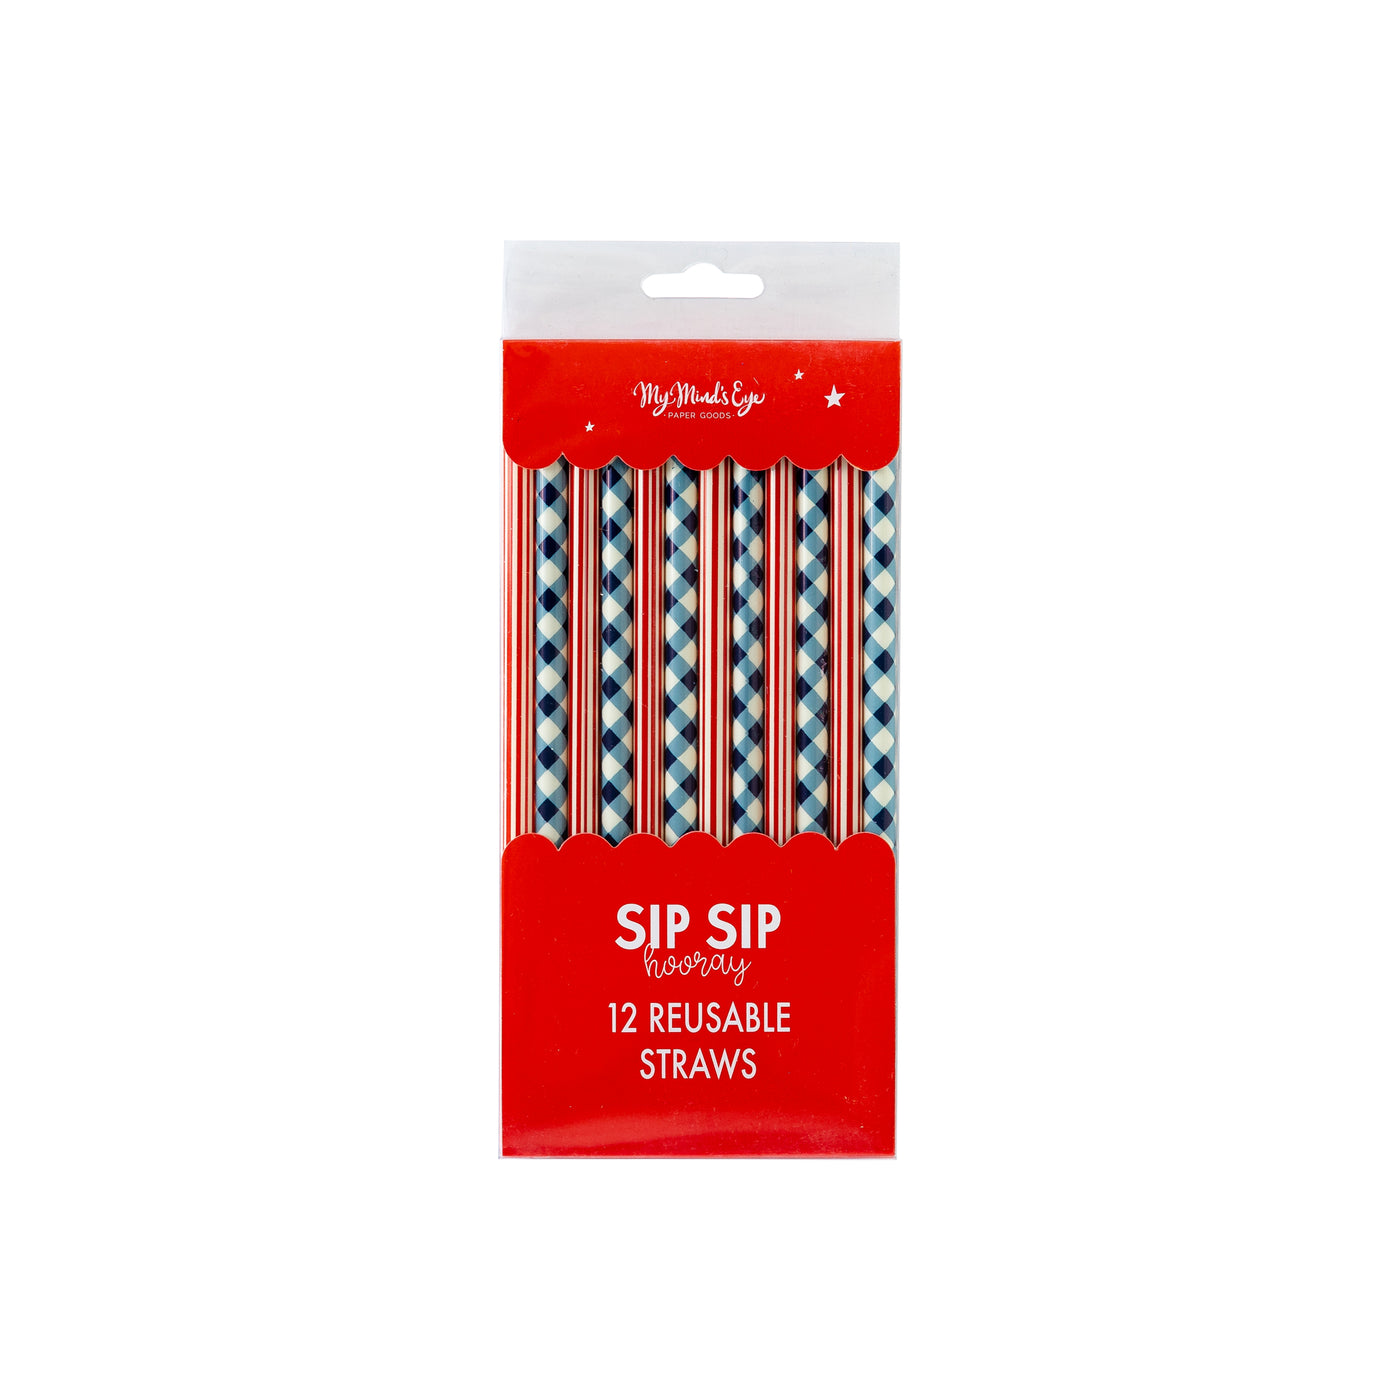 SSP926 - Plaid and Stripes Reusable Straws